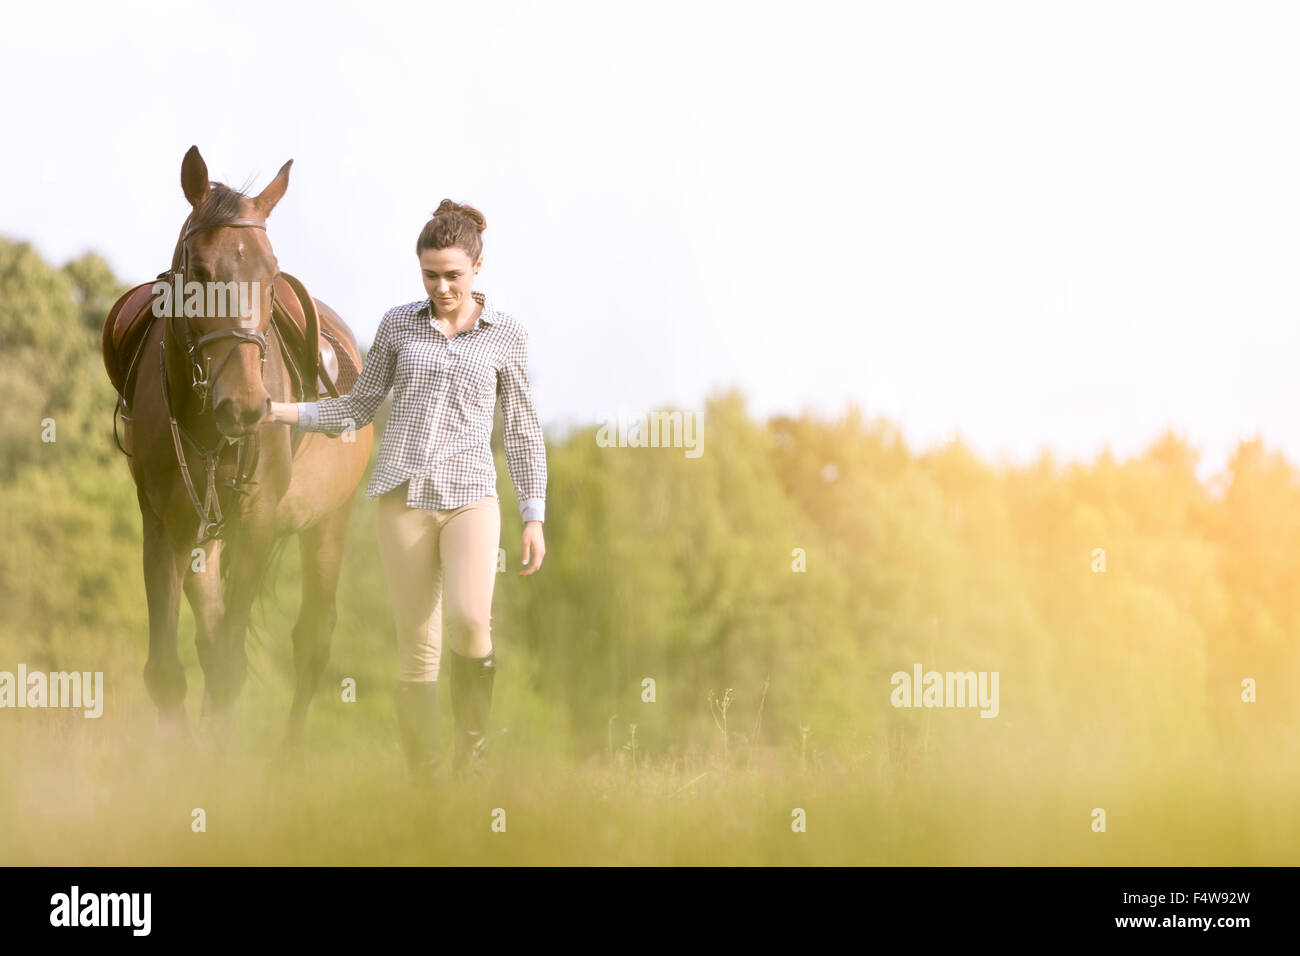 Woman walking horse in rural field Stock Photo